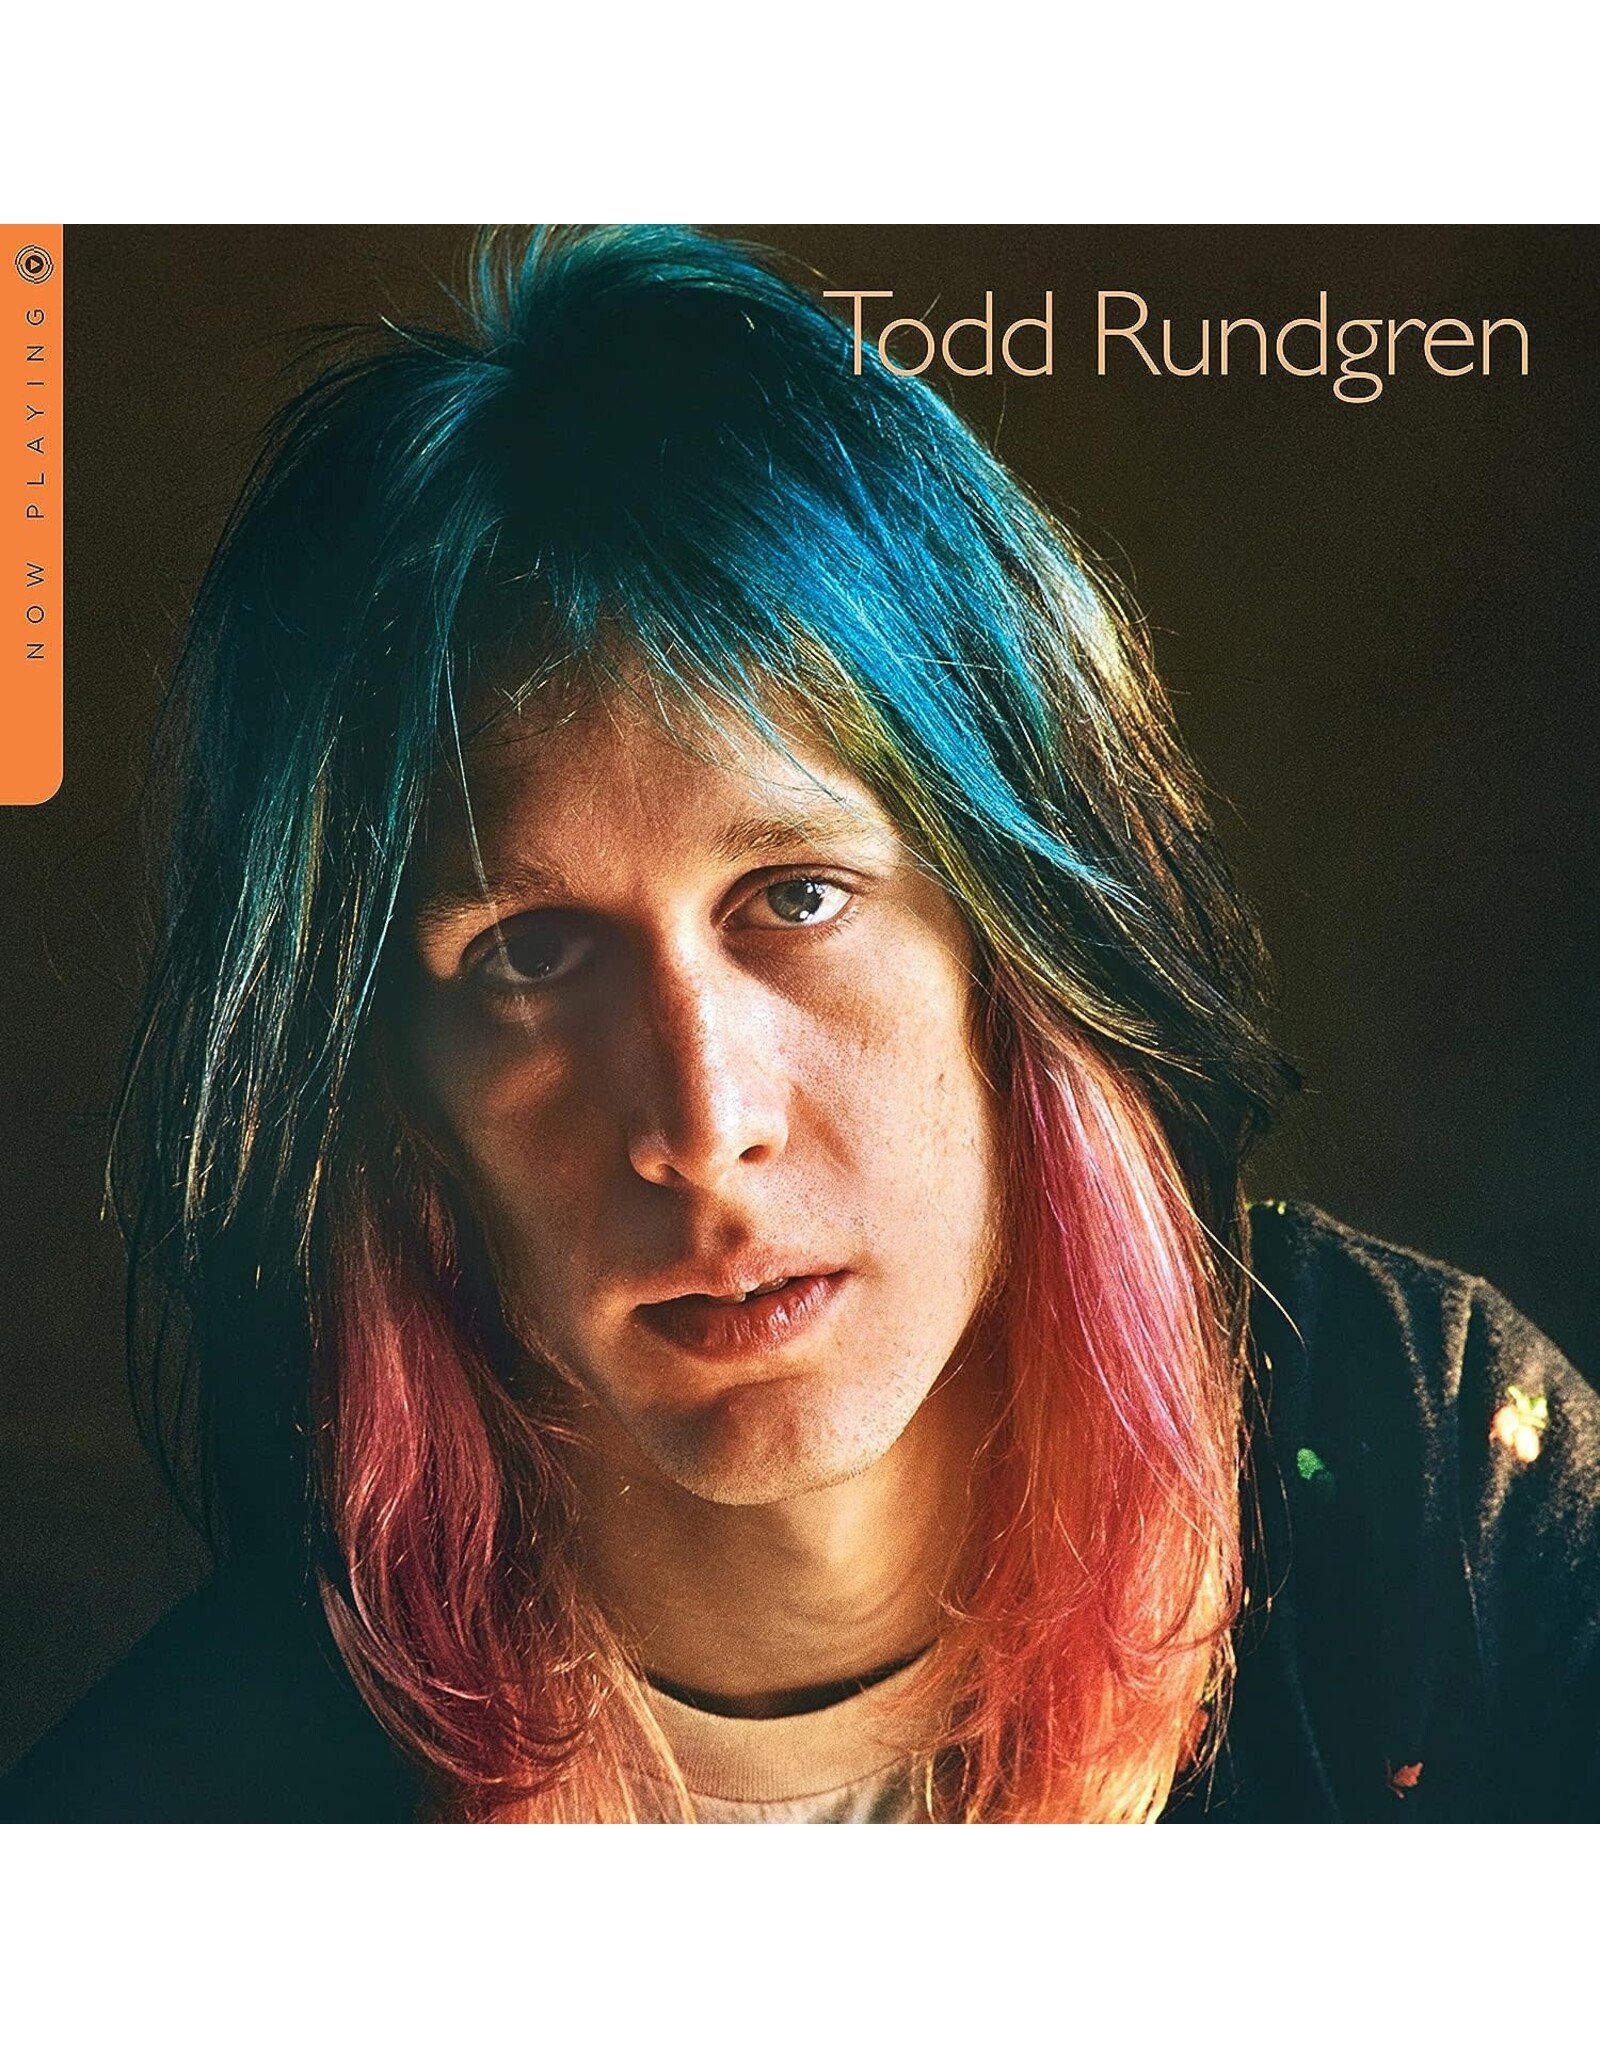 Todd Rundgren - Now Playing; The Best Of Todd Rundgren